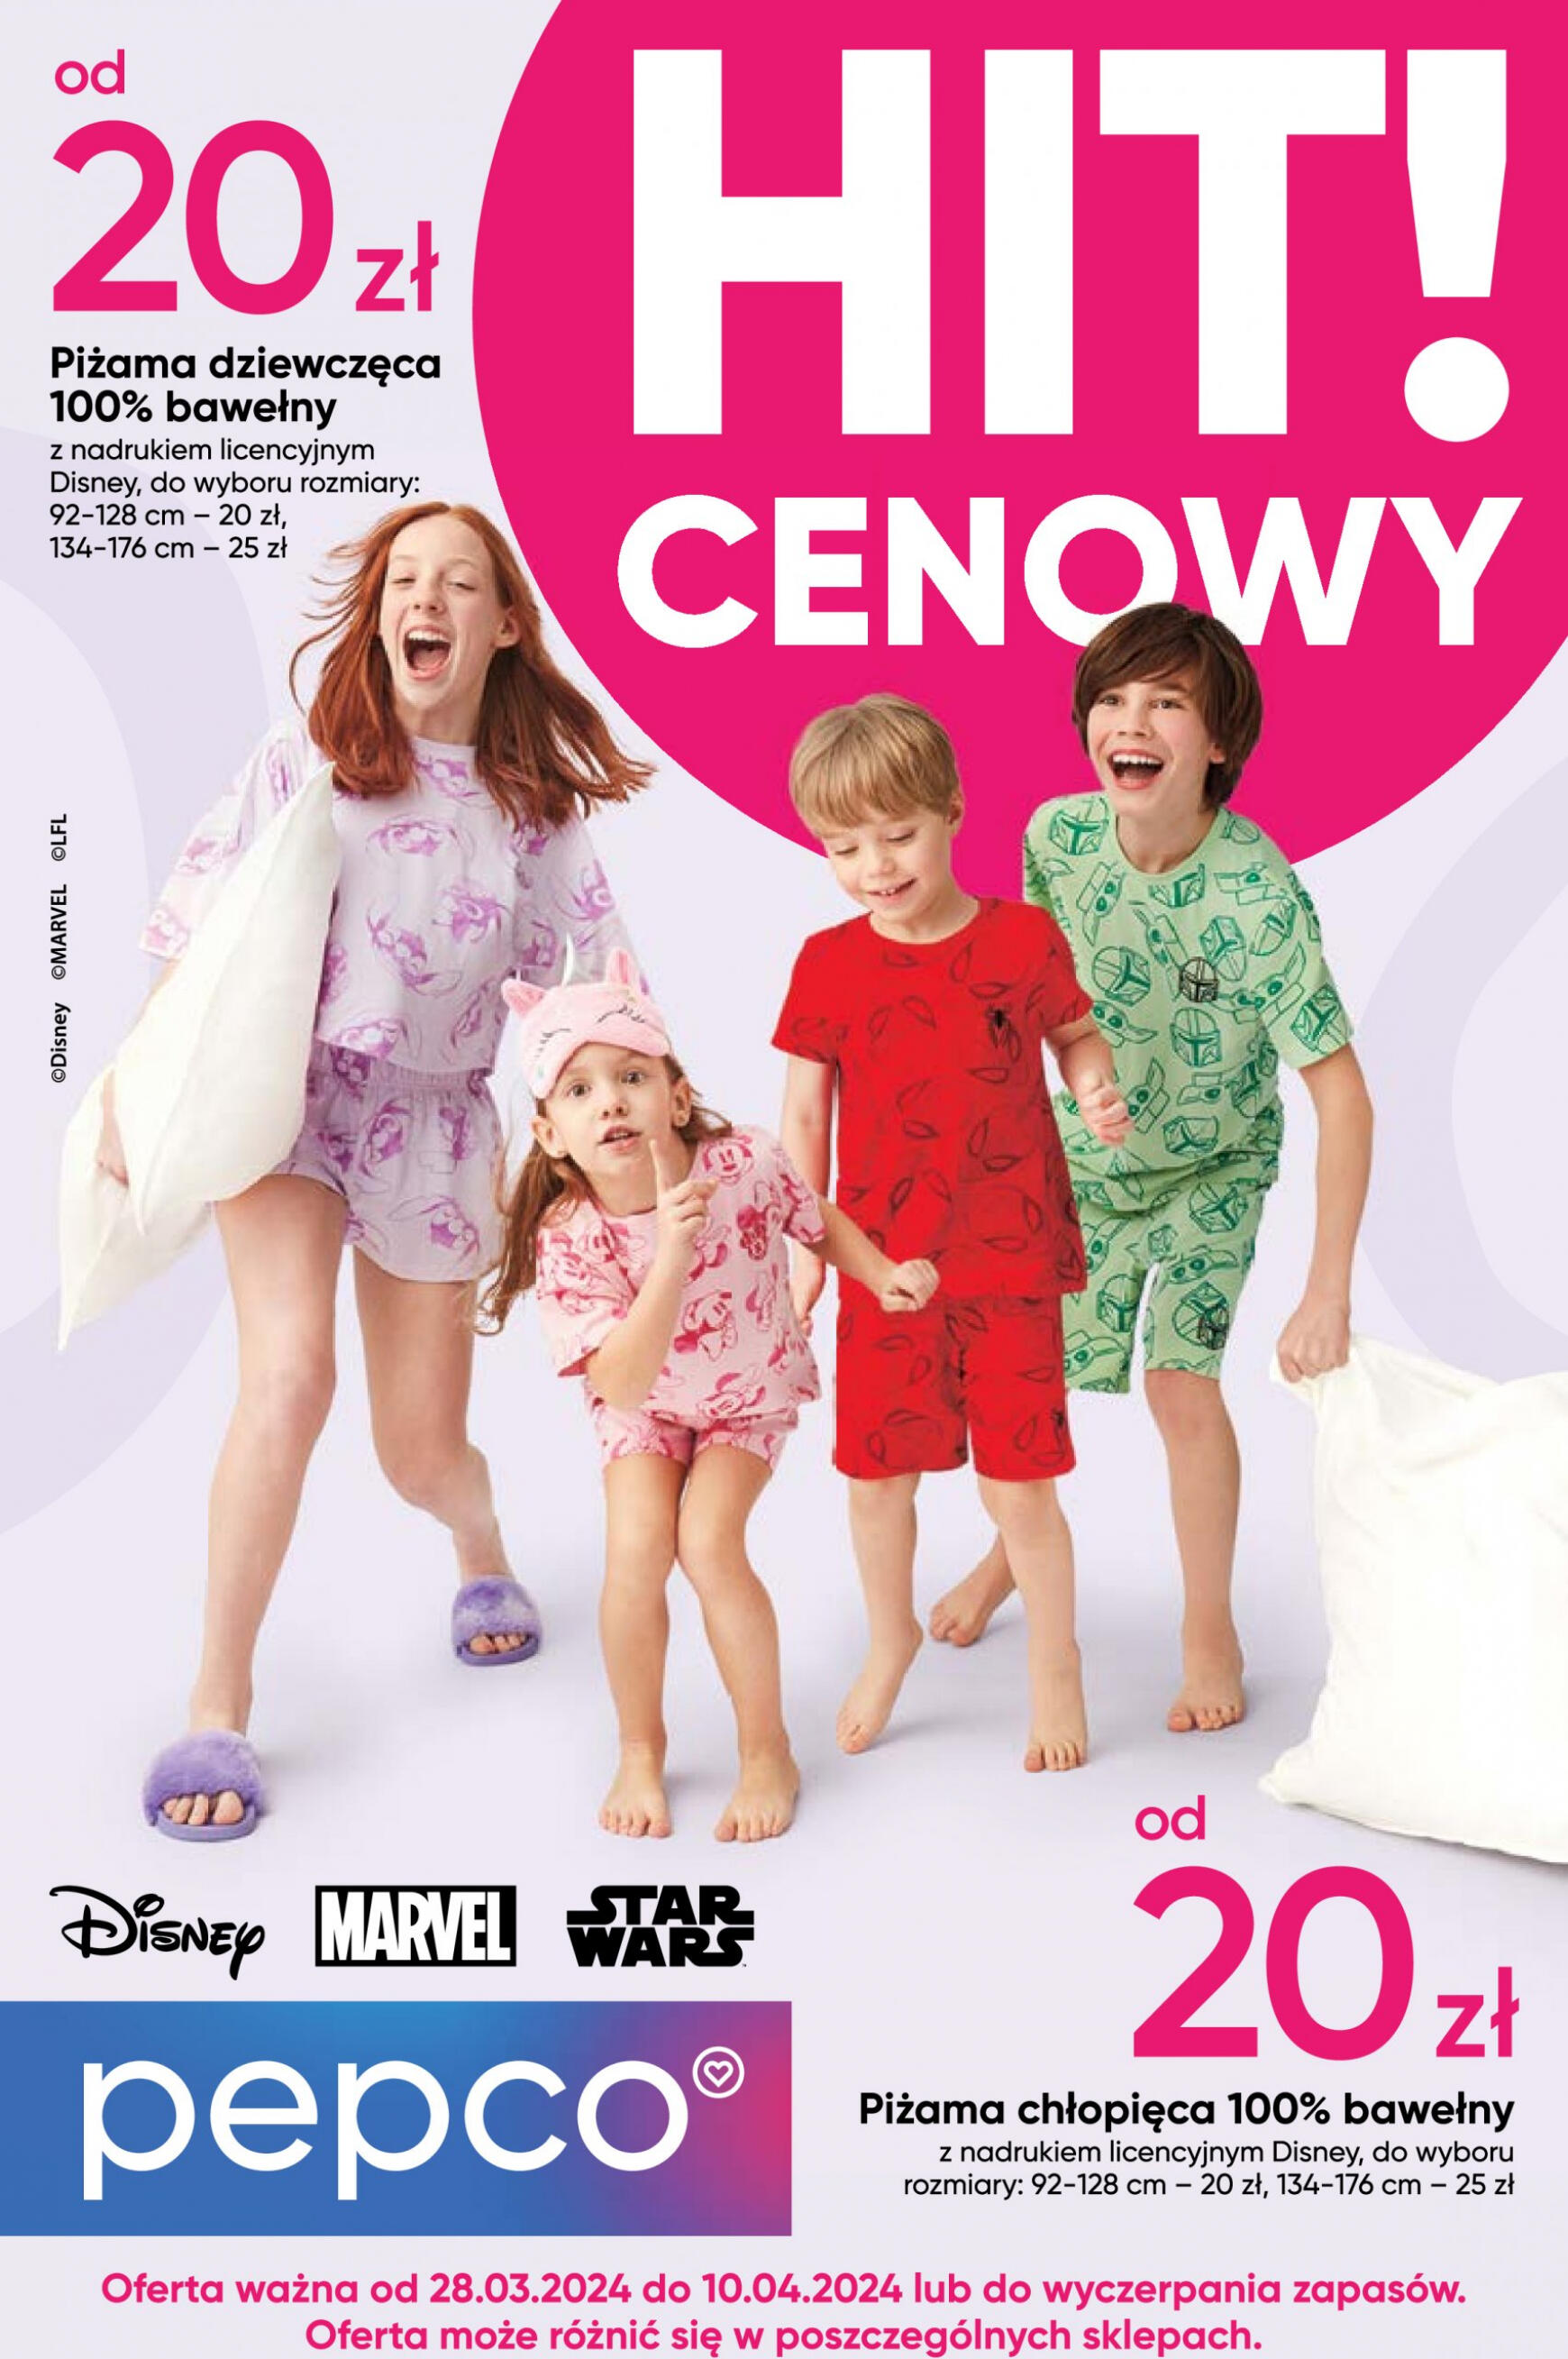 pepco - Pepco - Piżamy Disney obowiązuje od 28.03.2024